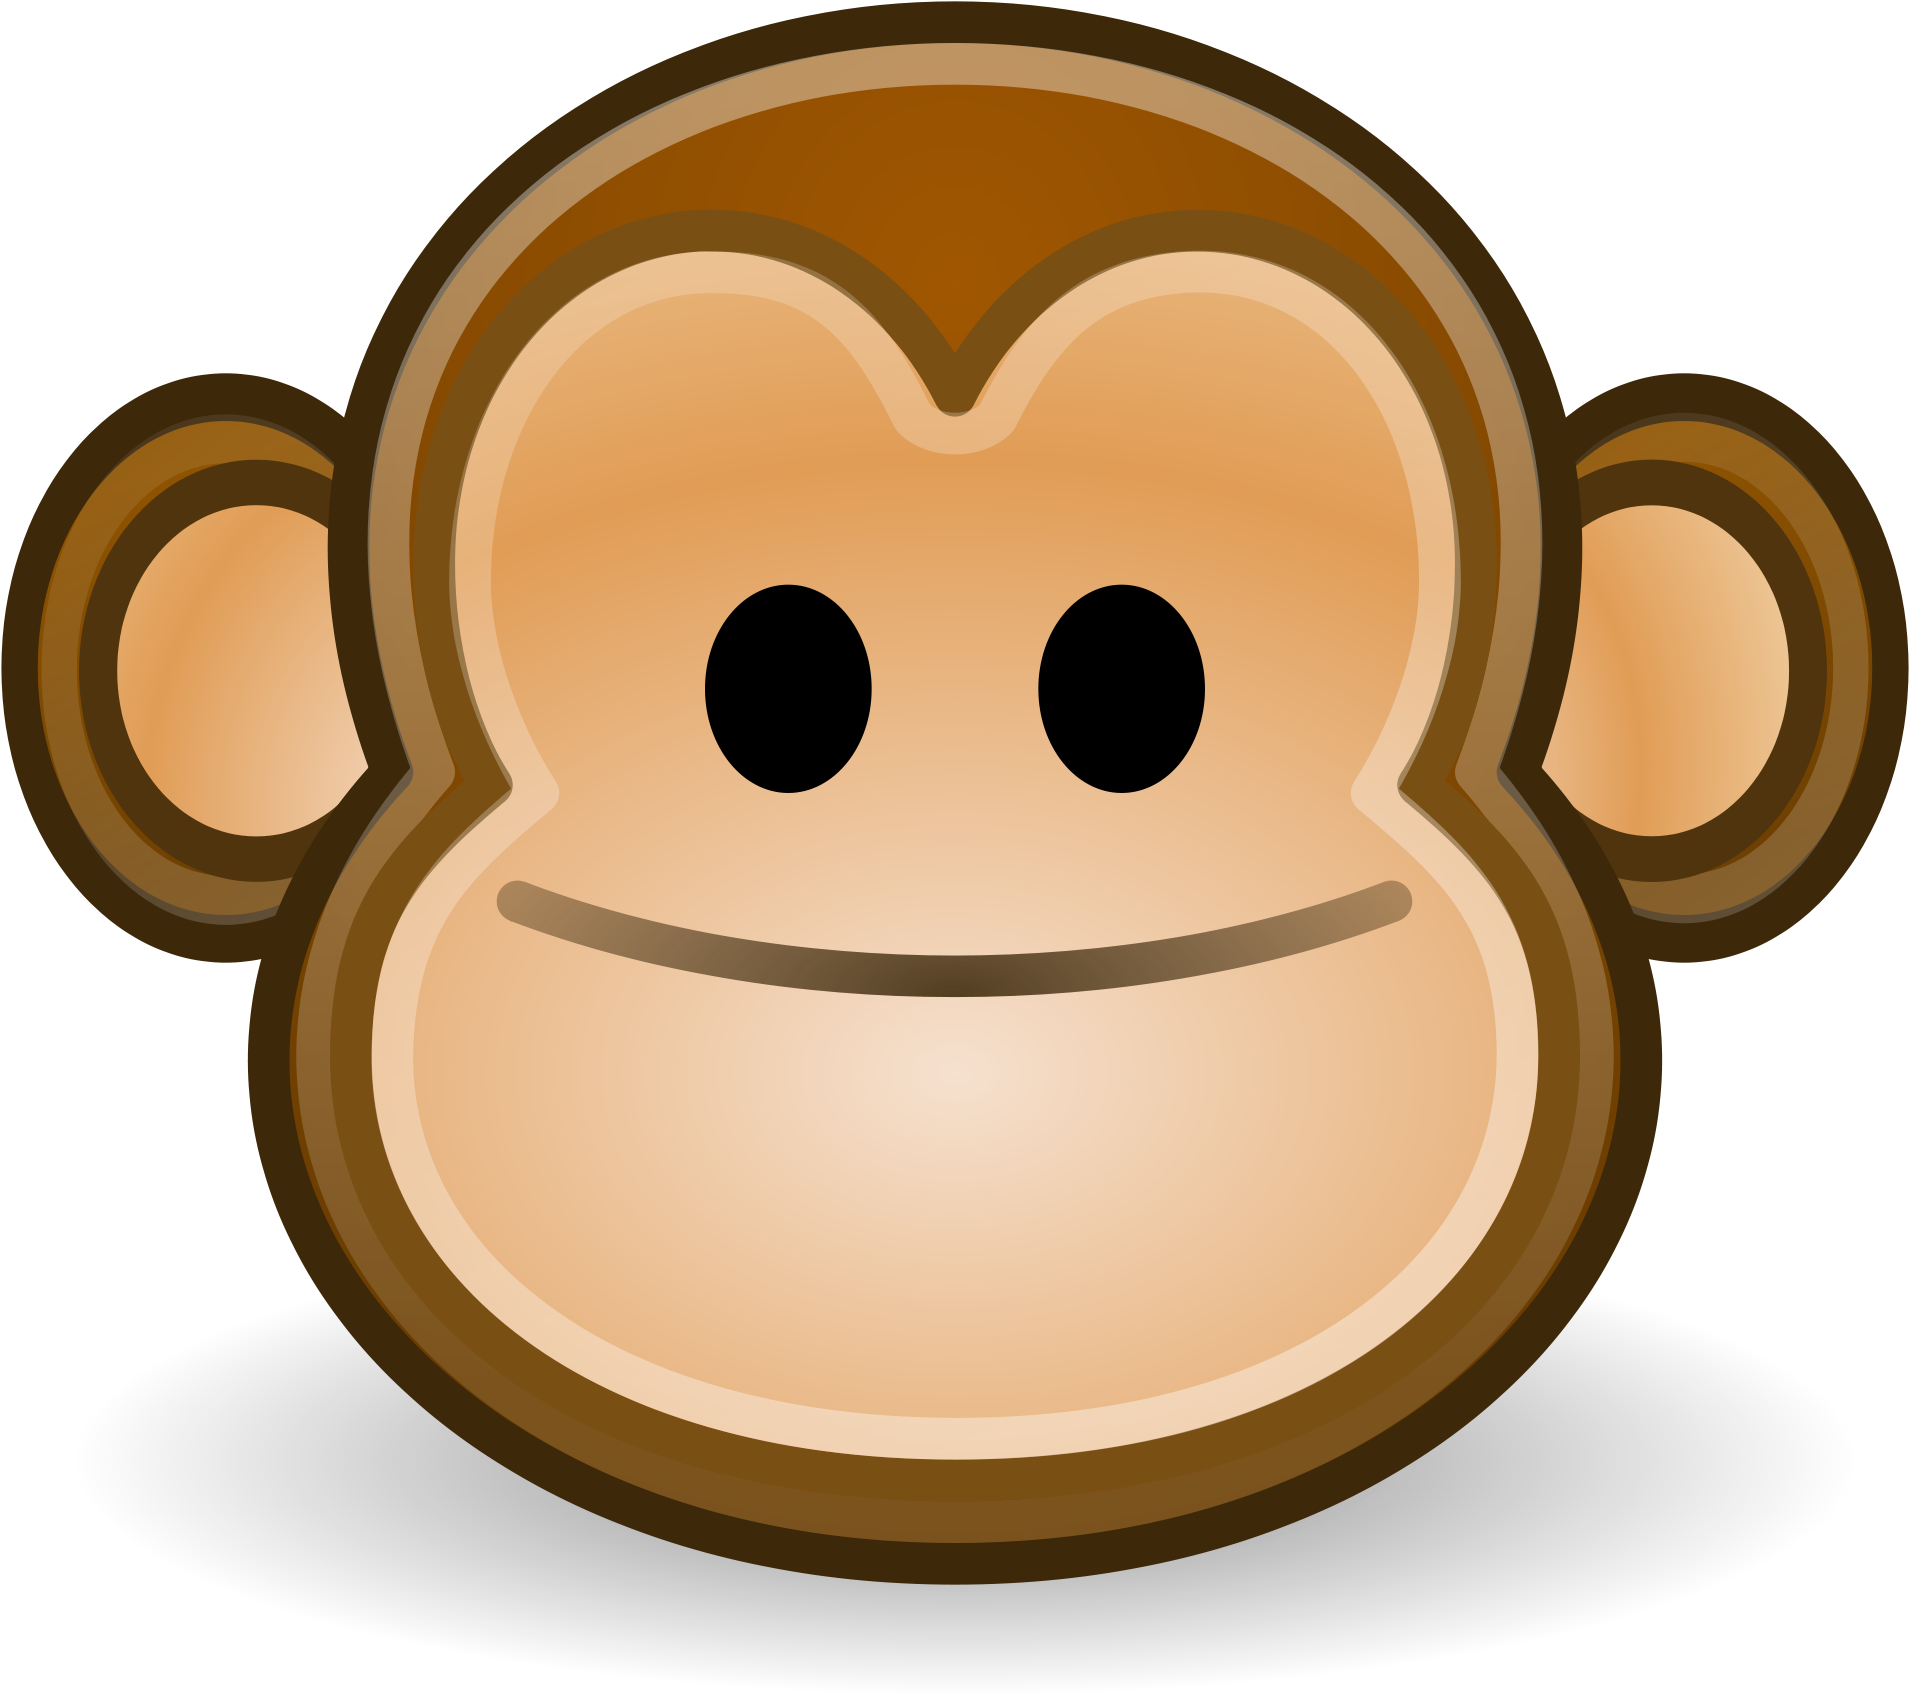 Cartoon Monkey Image 27, - Monkey Face Icon (2000x2000)